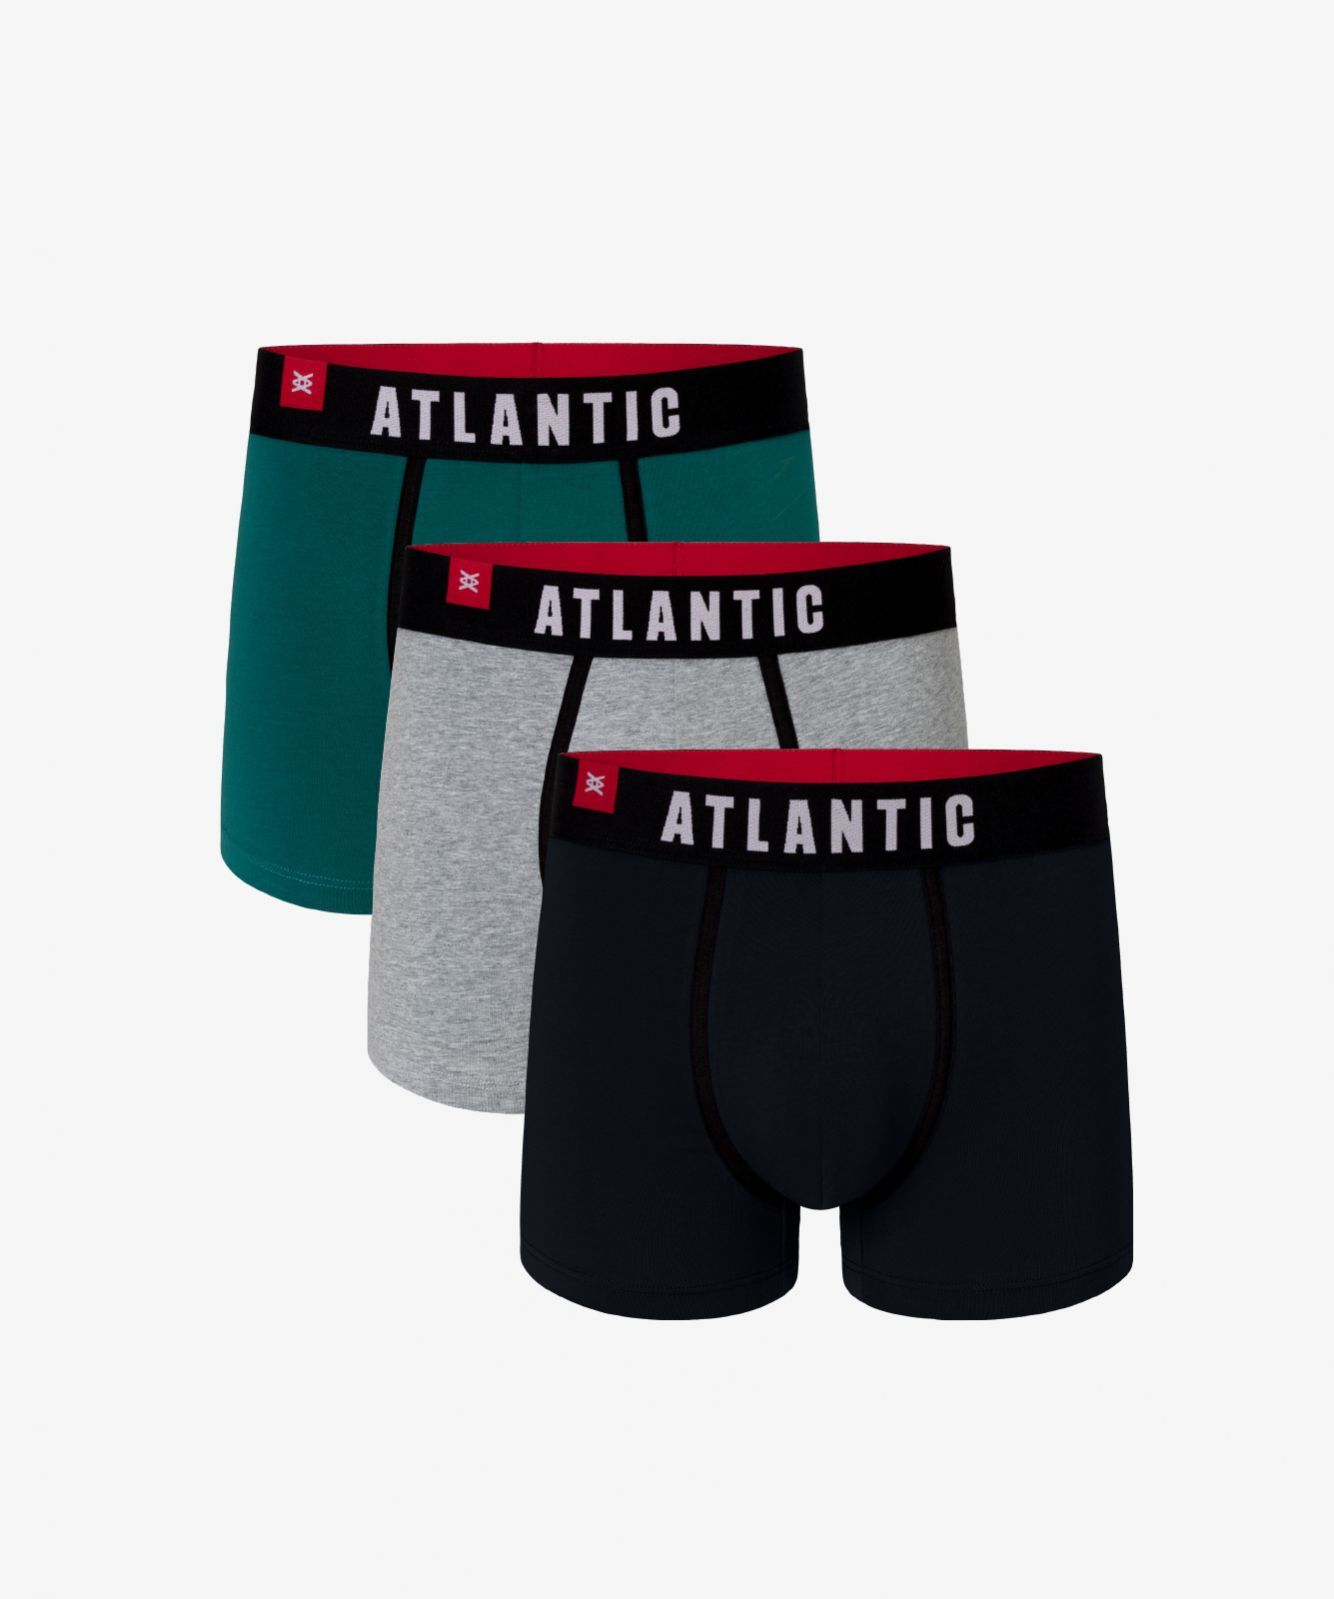 Мужские трусы шорты Atlantic, набор из 3 шт., хлопок, зеленые + серый меланж + графит, 3MH-014